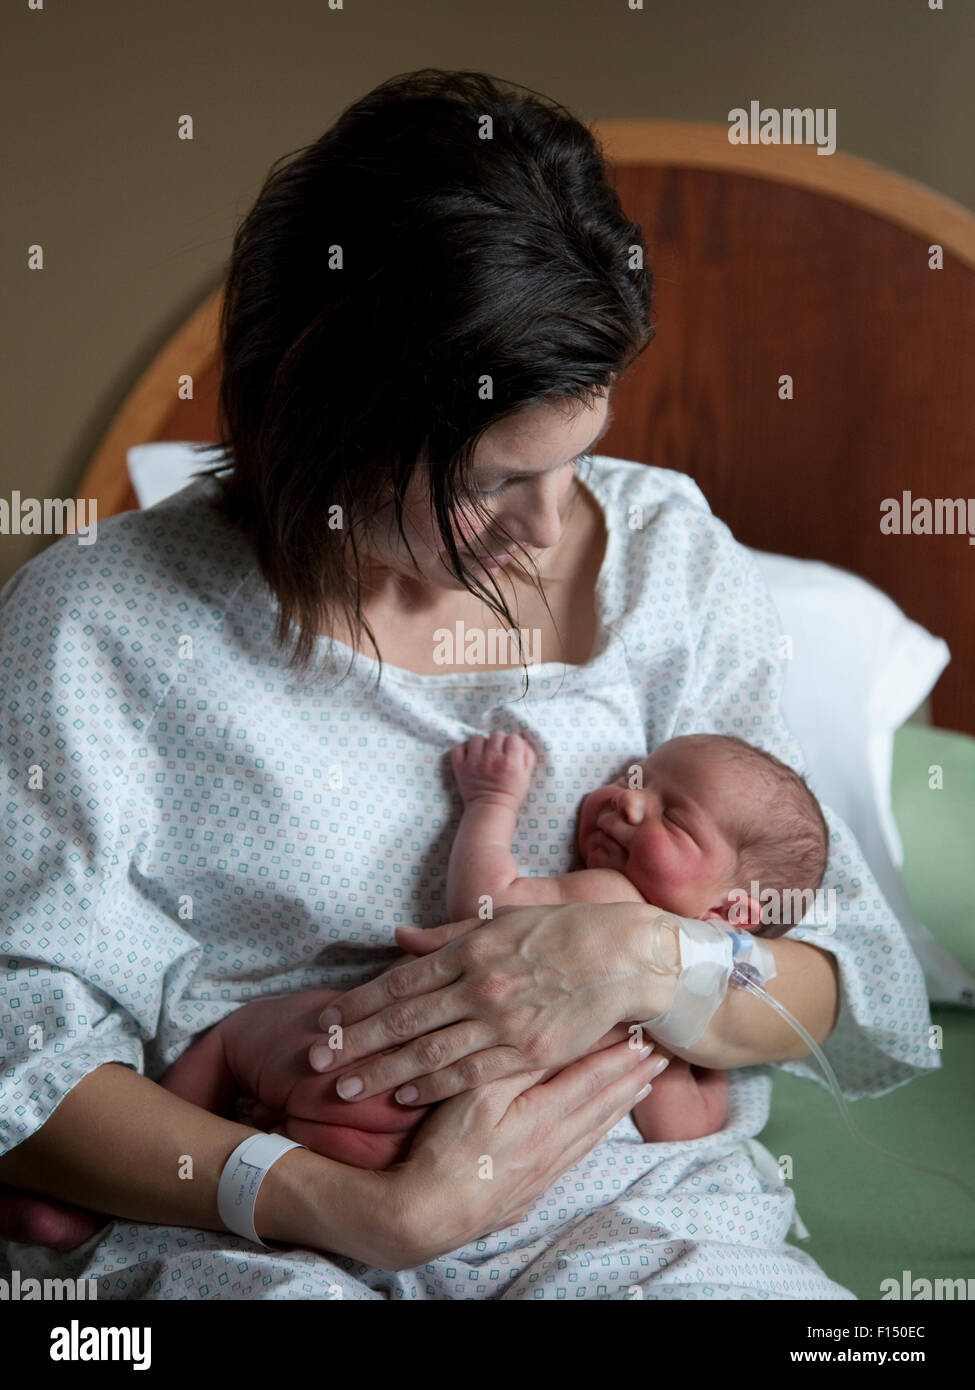 Stati Uniti d'America, Utah, Payson, Madre abbracciando baby boy (0-1 mesi) sul letto Foto Stock